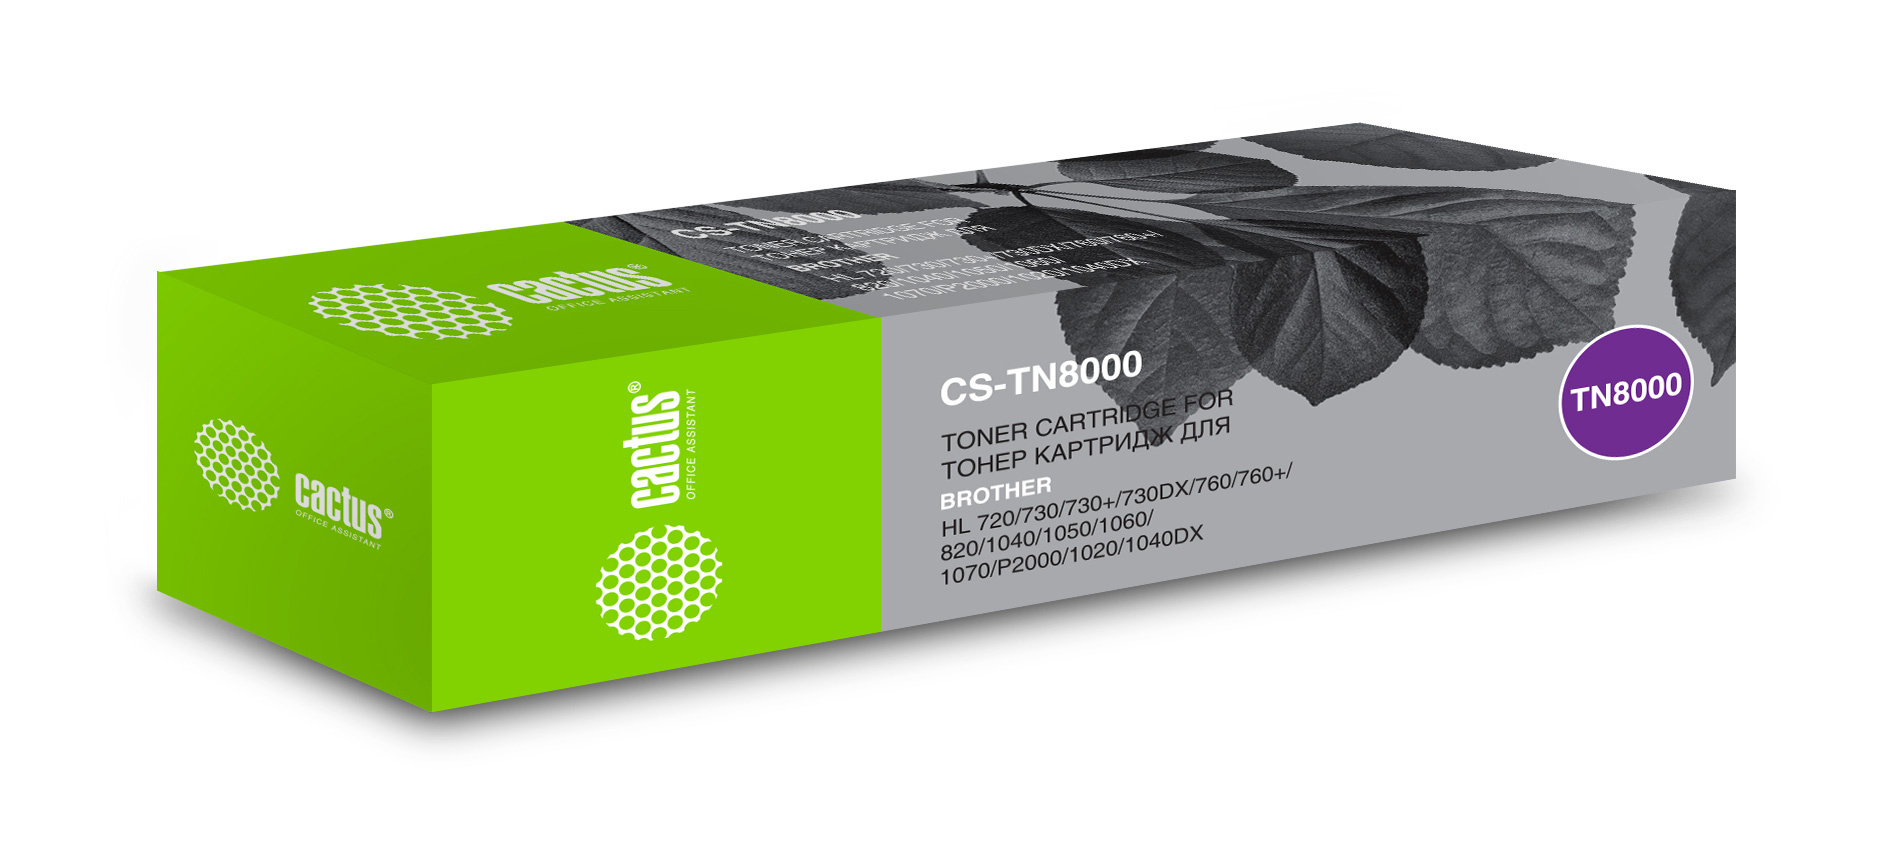 Картридж лазерный Cactus CS-TN8000 черный (2200стр.) для Brother HL-720/730/730+/730DX/760/760+ 